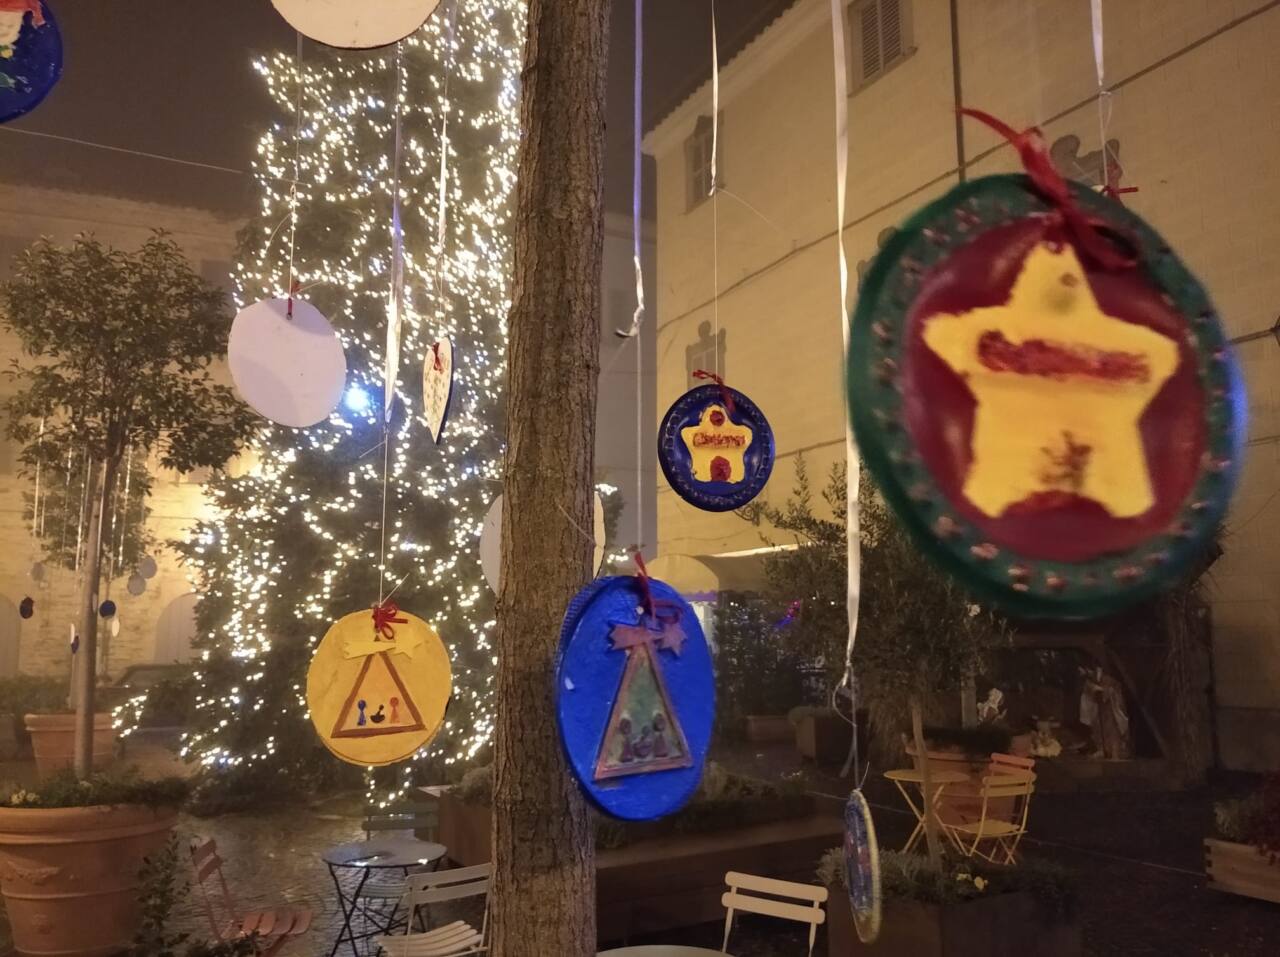 vandali in azione nella notte: distrutti gli addobbi di Natale